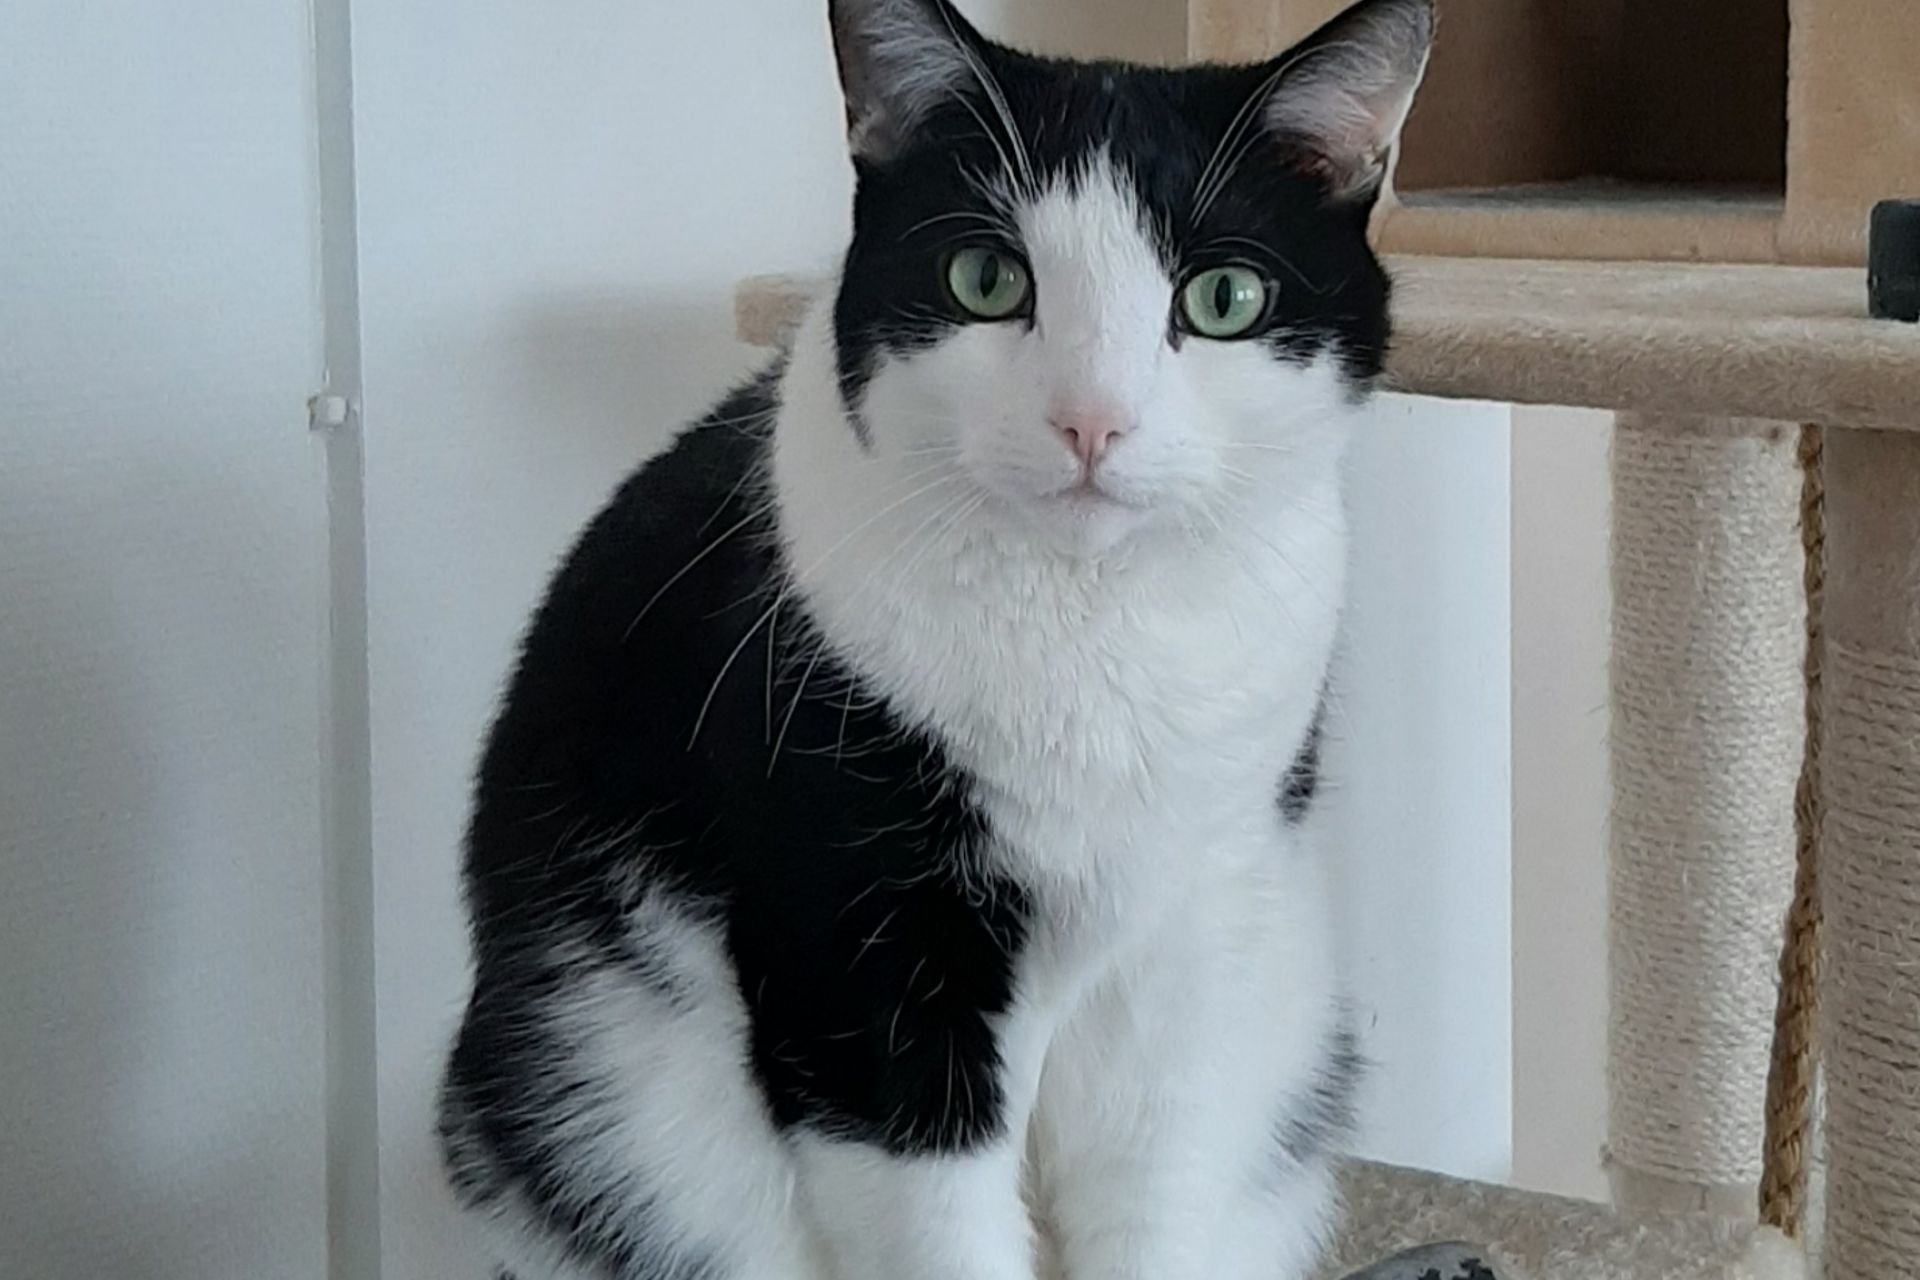 Onze lieve huiskat Banshee is ergens van geschrokken en het huis uitgerend. Hij is een erg schuwe, zwart-witte grote kater. Wij missen hem enorm en willen hem graag weer thuis hebben. 